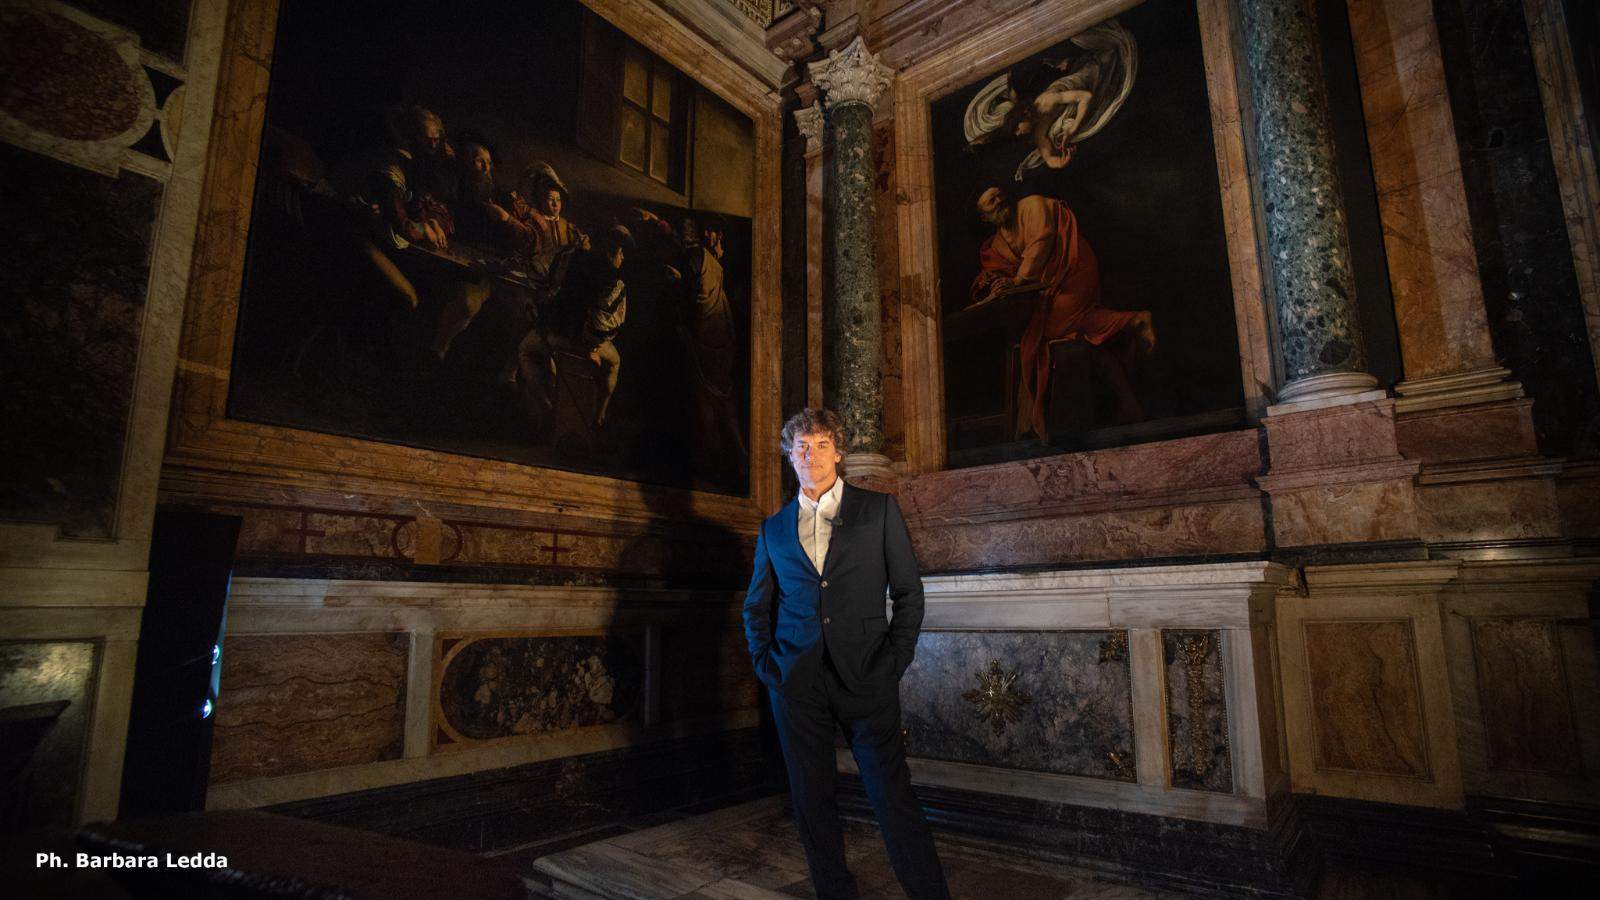 Stasera su Rai1 l'attesissimo speciale inedito di Alberto Angela su Caravaggio